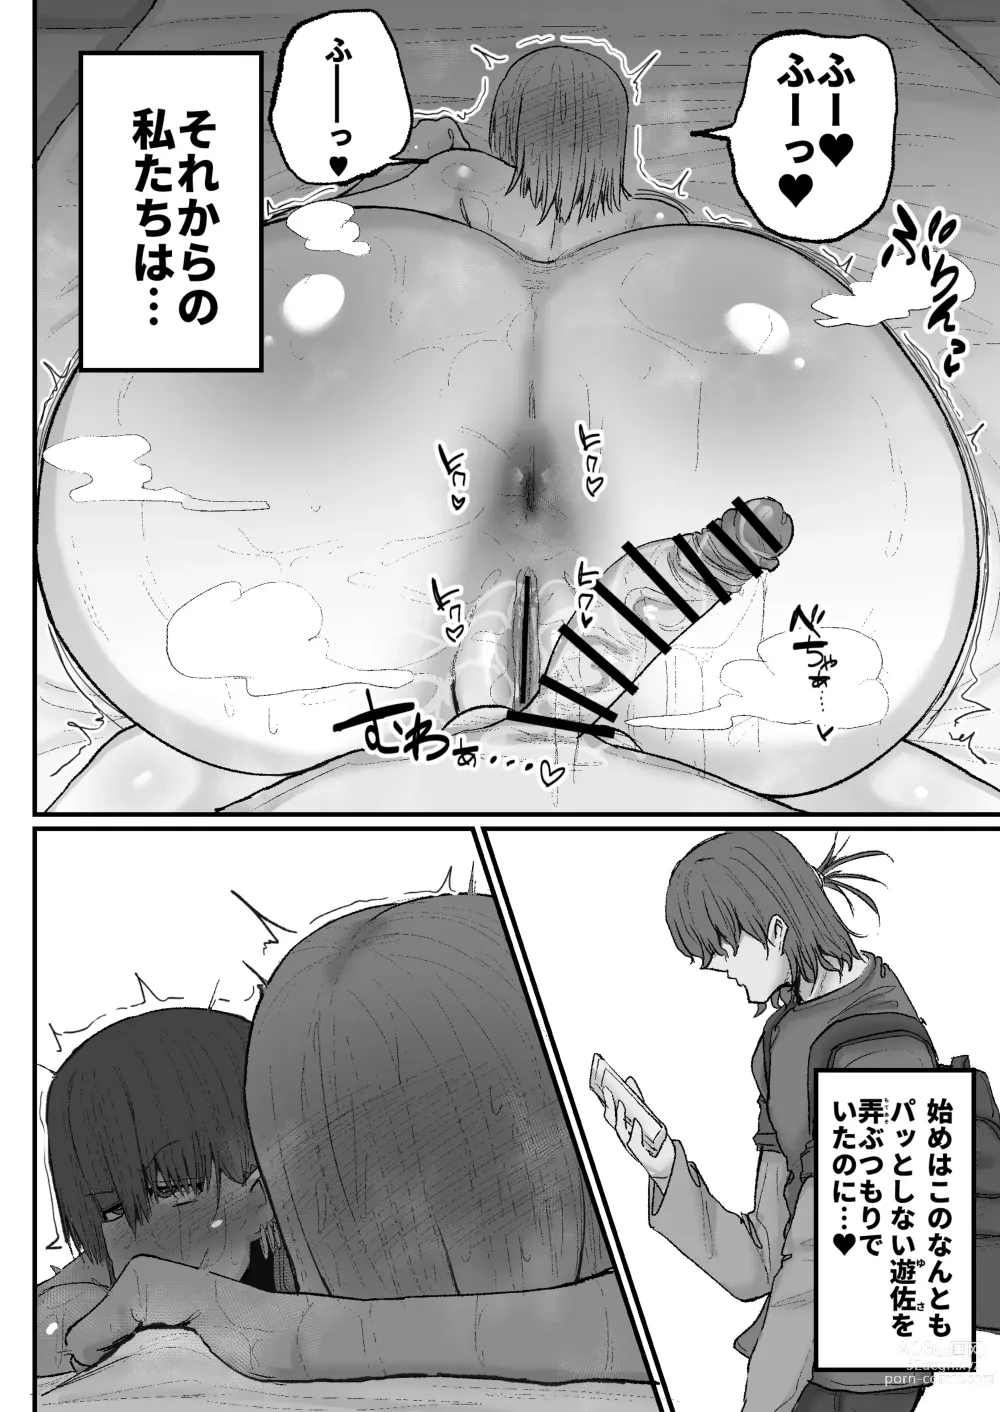 Page 32 of doujinshi Gyaku nanofupako de hyorogari kimi o karakattara migoto ni kaeriuchi ni aimashita